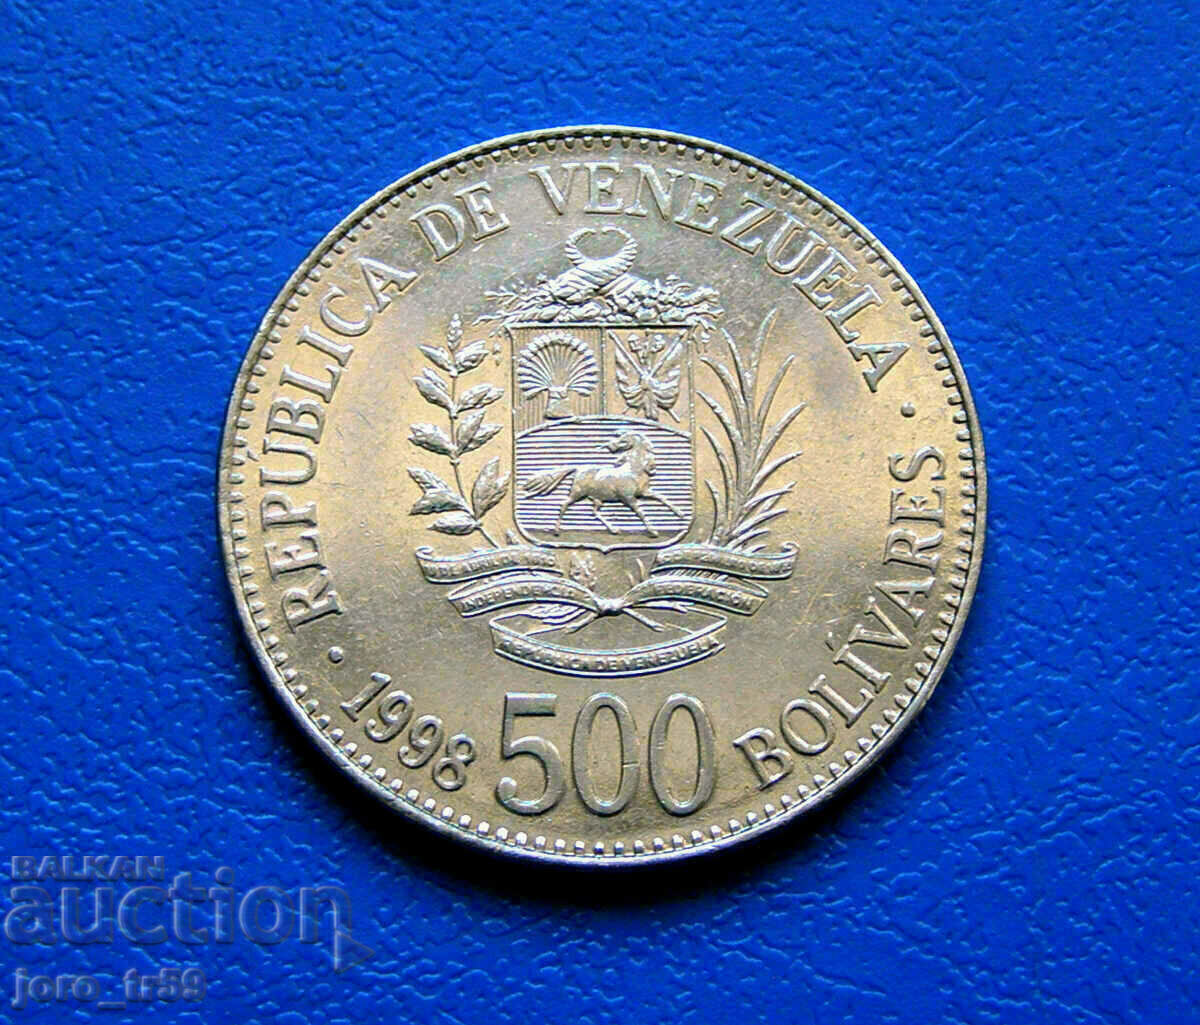 Venezuela 500 Bolivares /500 Bolívares/ 1998 UNC